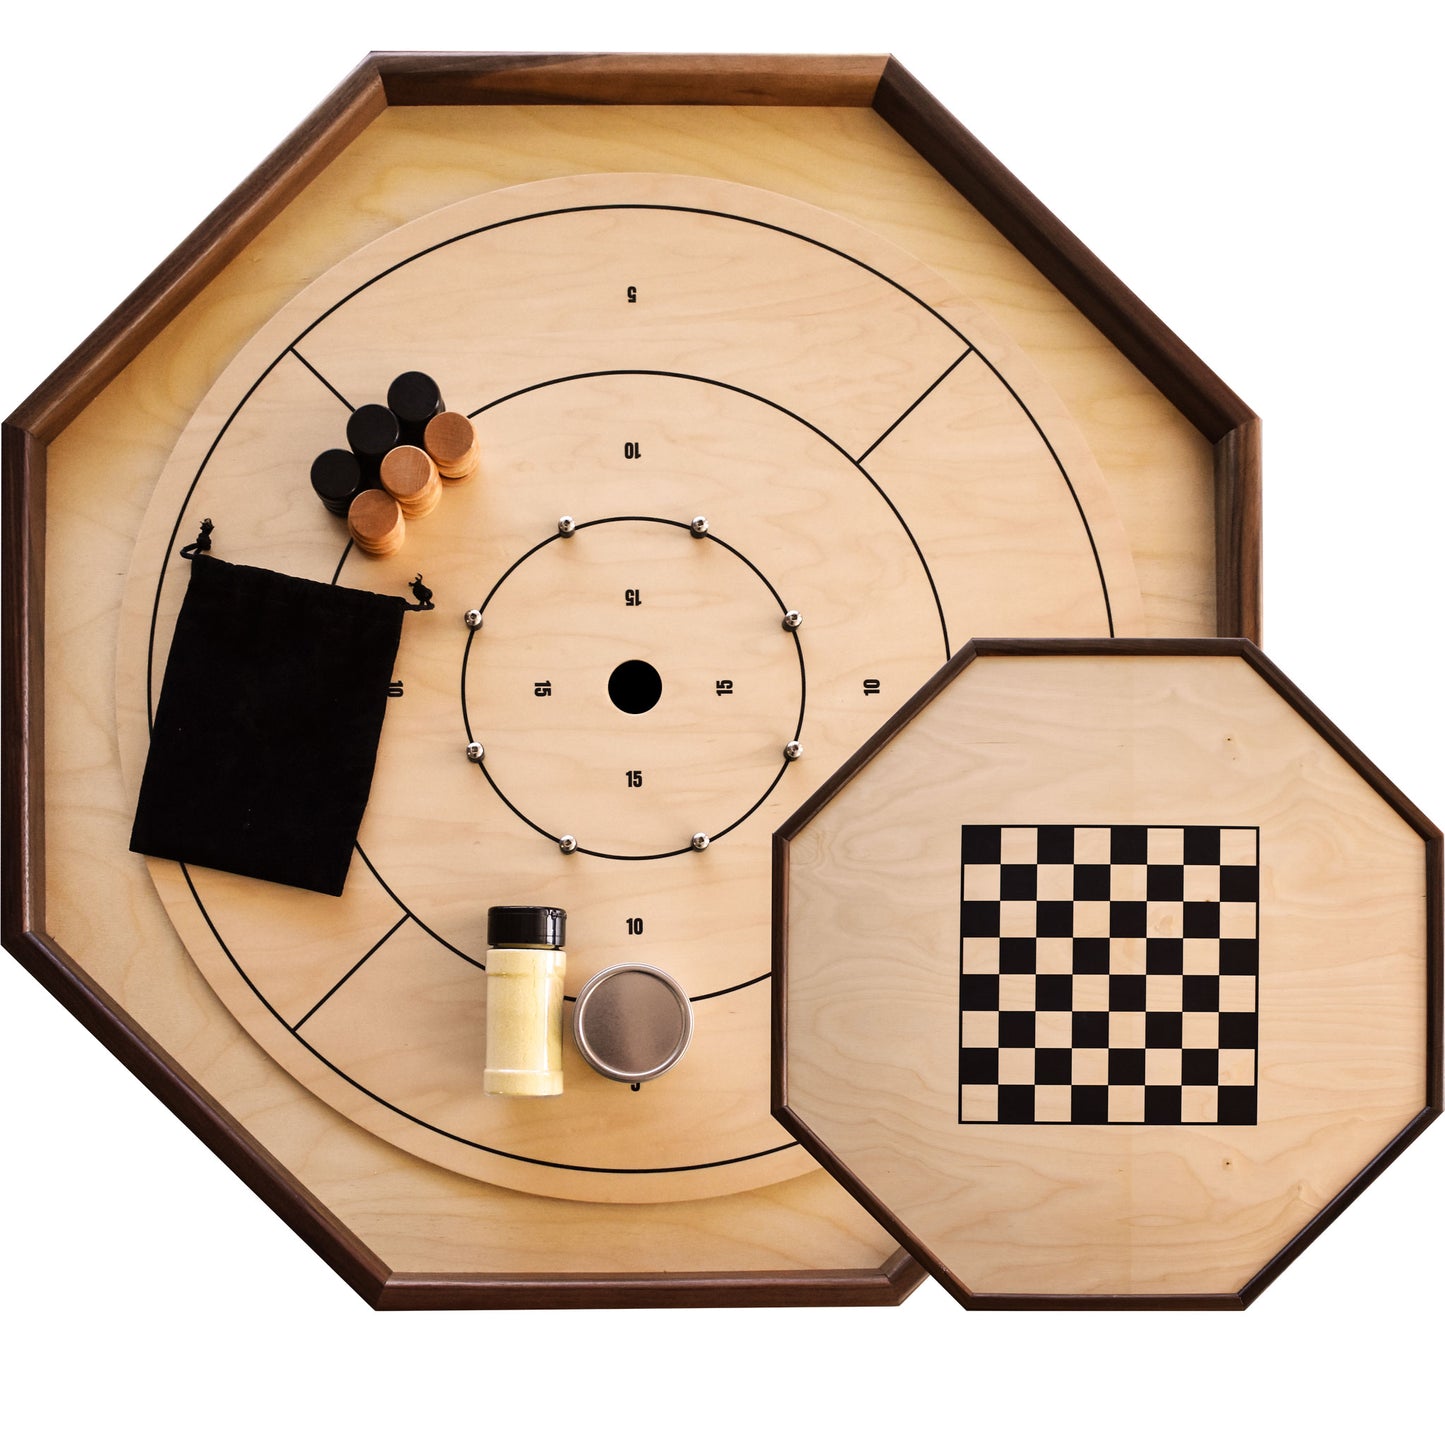 Le kit de jeu de société Crokinole traditionnel de luxe 